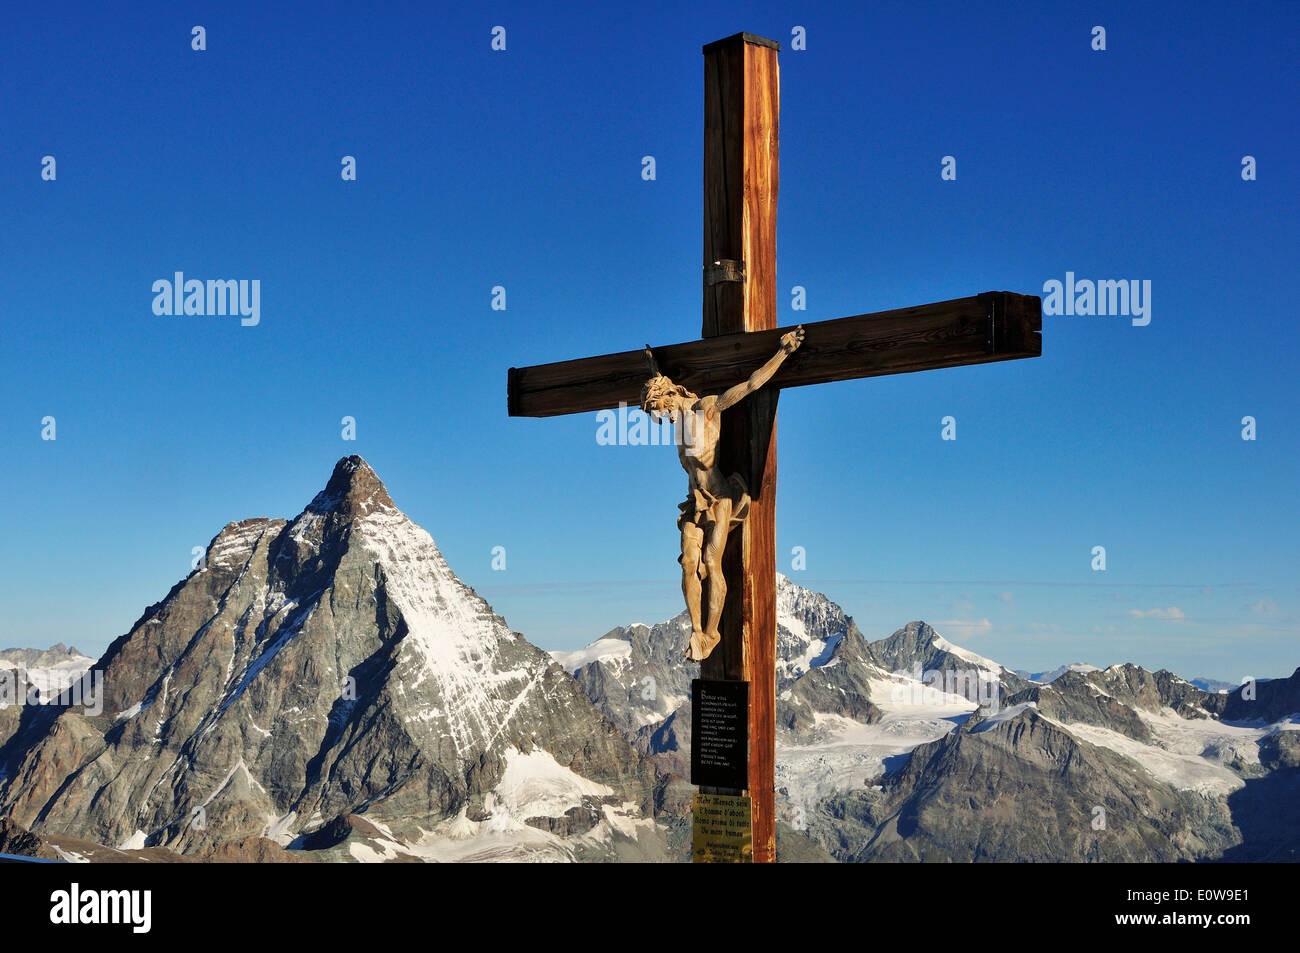 Crocifisso, Cervino, 4478 m, Klein Matterhorn, Zermatt, Vallese, Svizzera Foto Stock